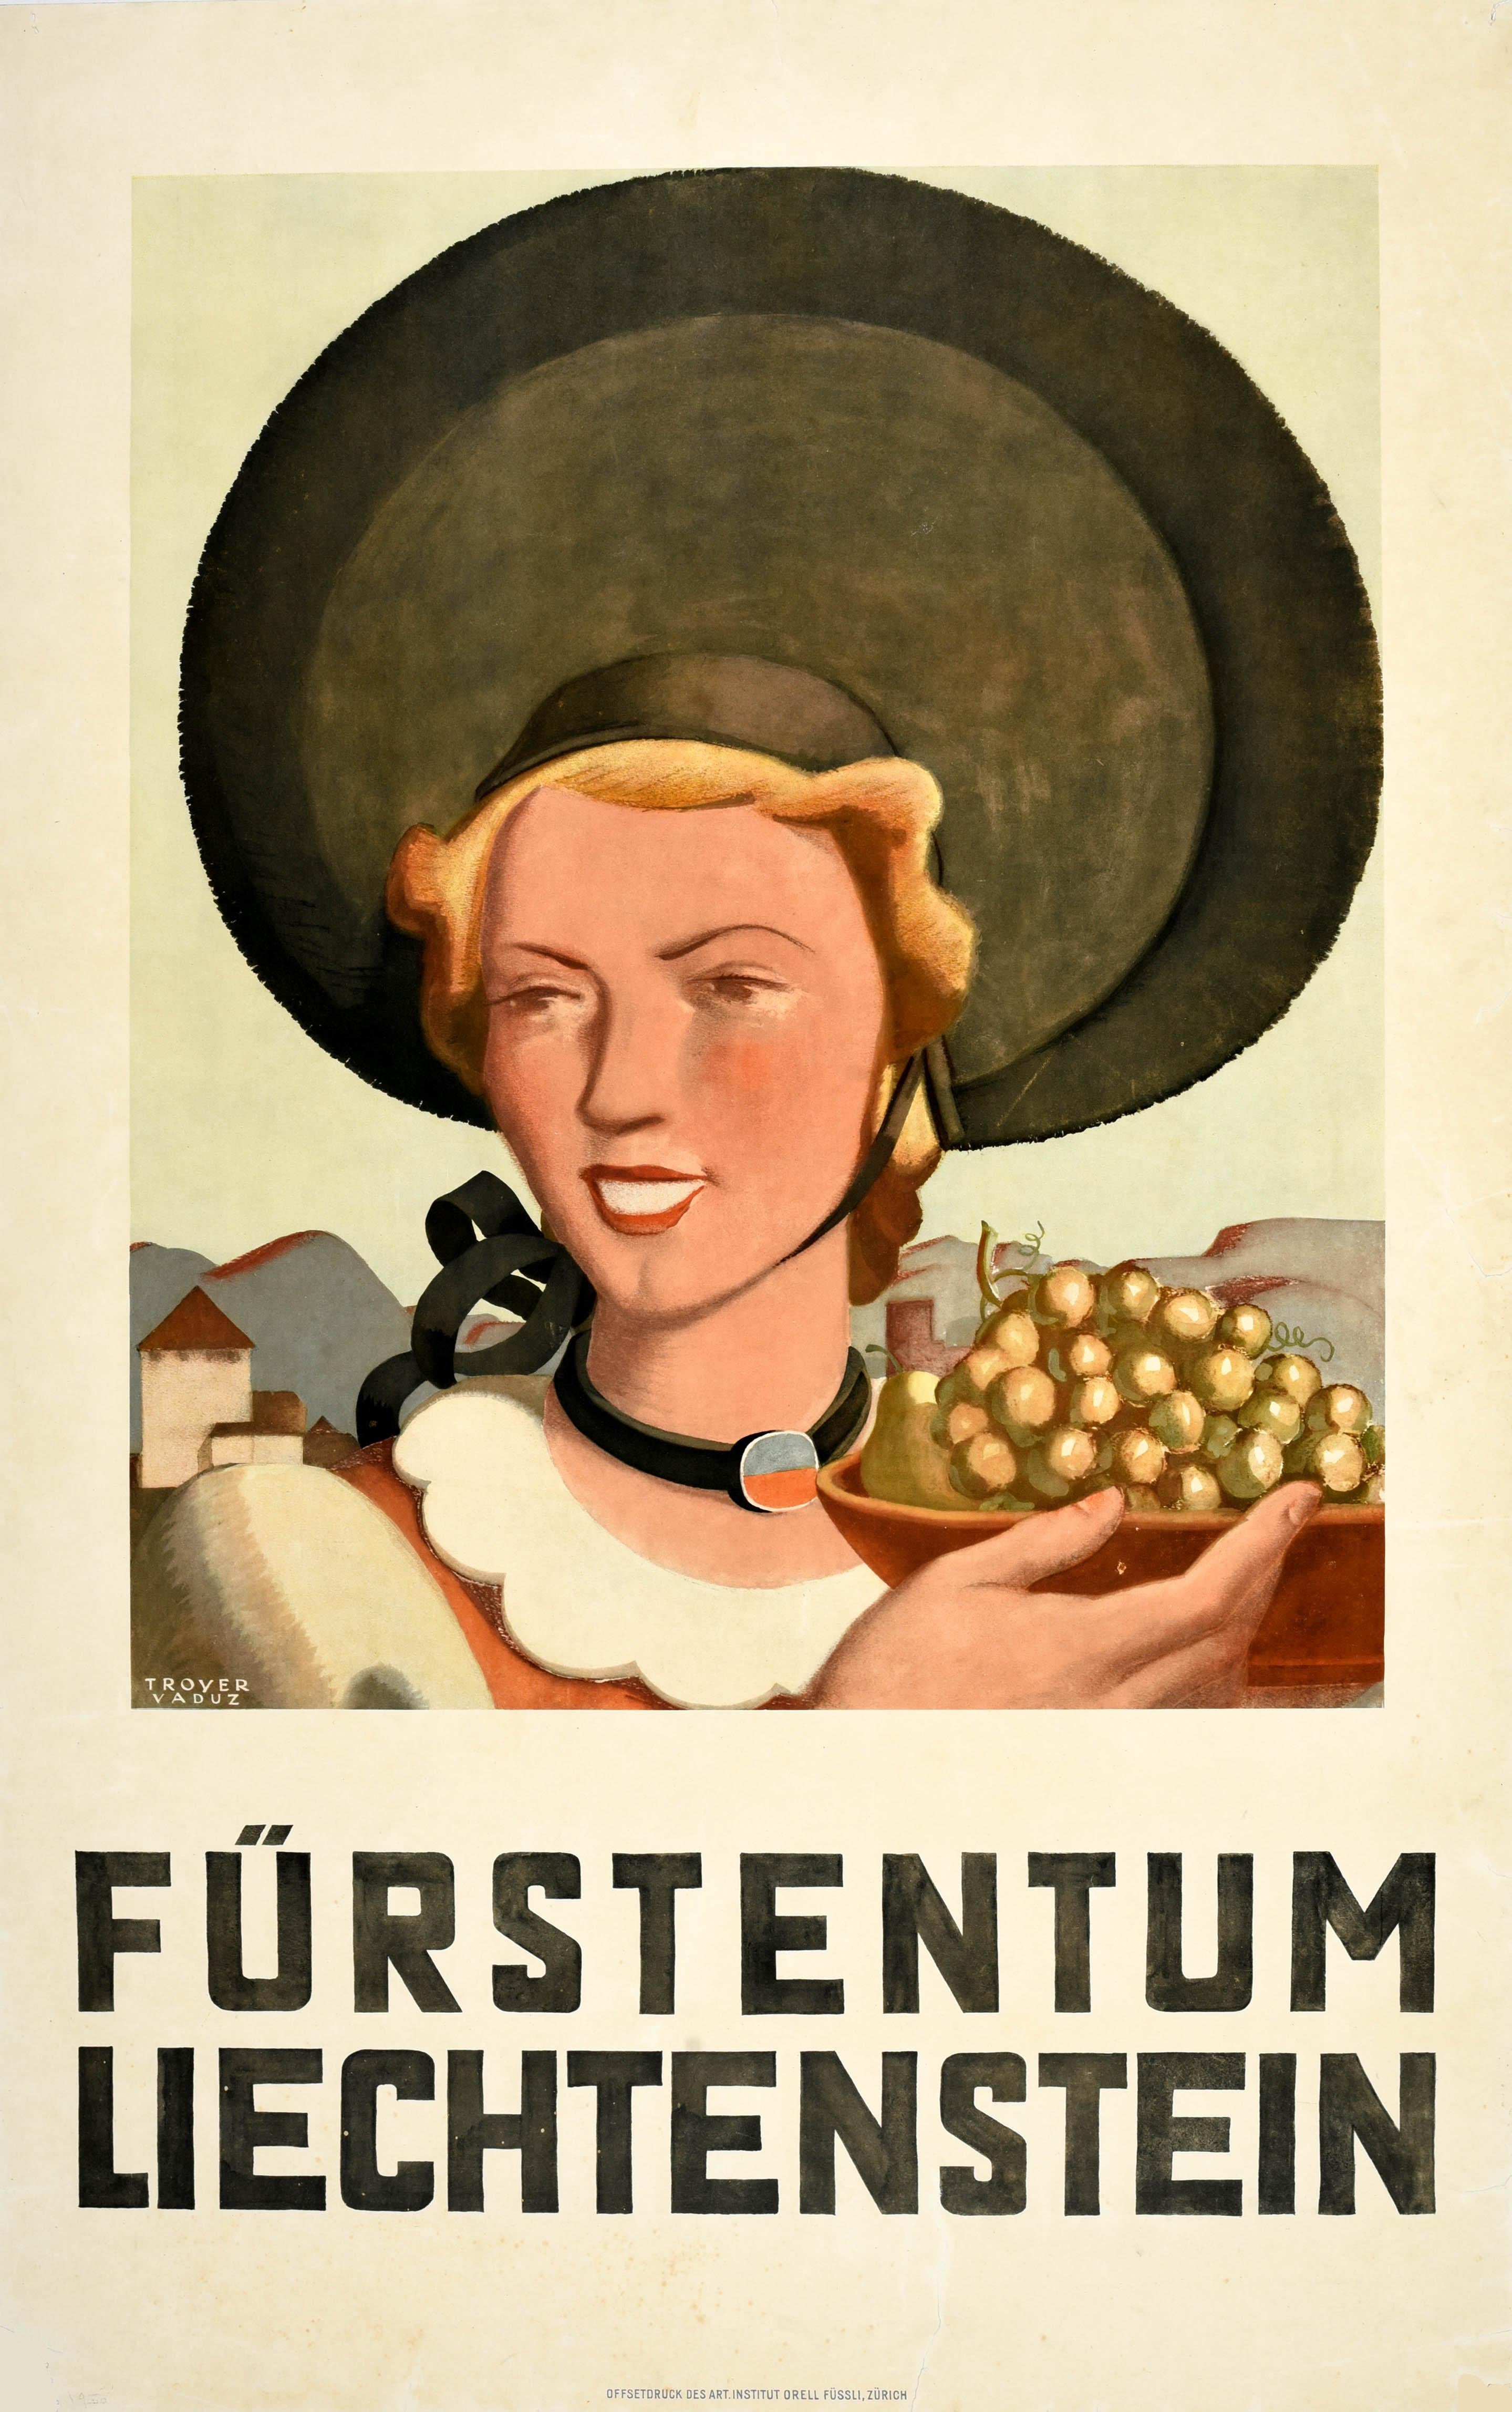 Original Vintage-Reiseplakat für das Fürstentum Liechtenstein / Furstentum Liechtenstein mit einem Kunstwerk von Johannes Troyer (1902-1969), das eine lächelnde Dame mit einem großen Hut zeigt, die eine Schale mit Trauben vor einem alten Gebäude und